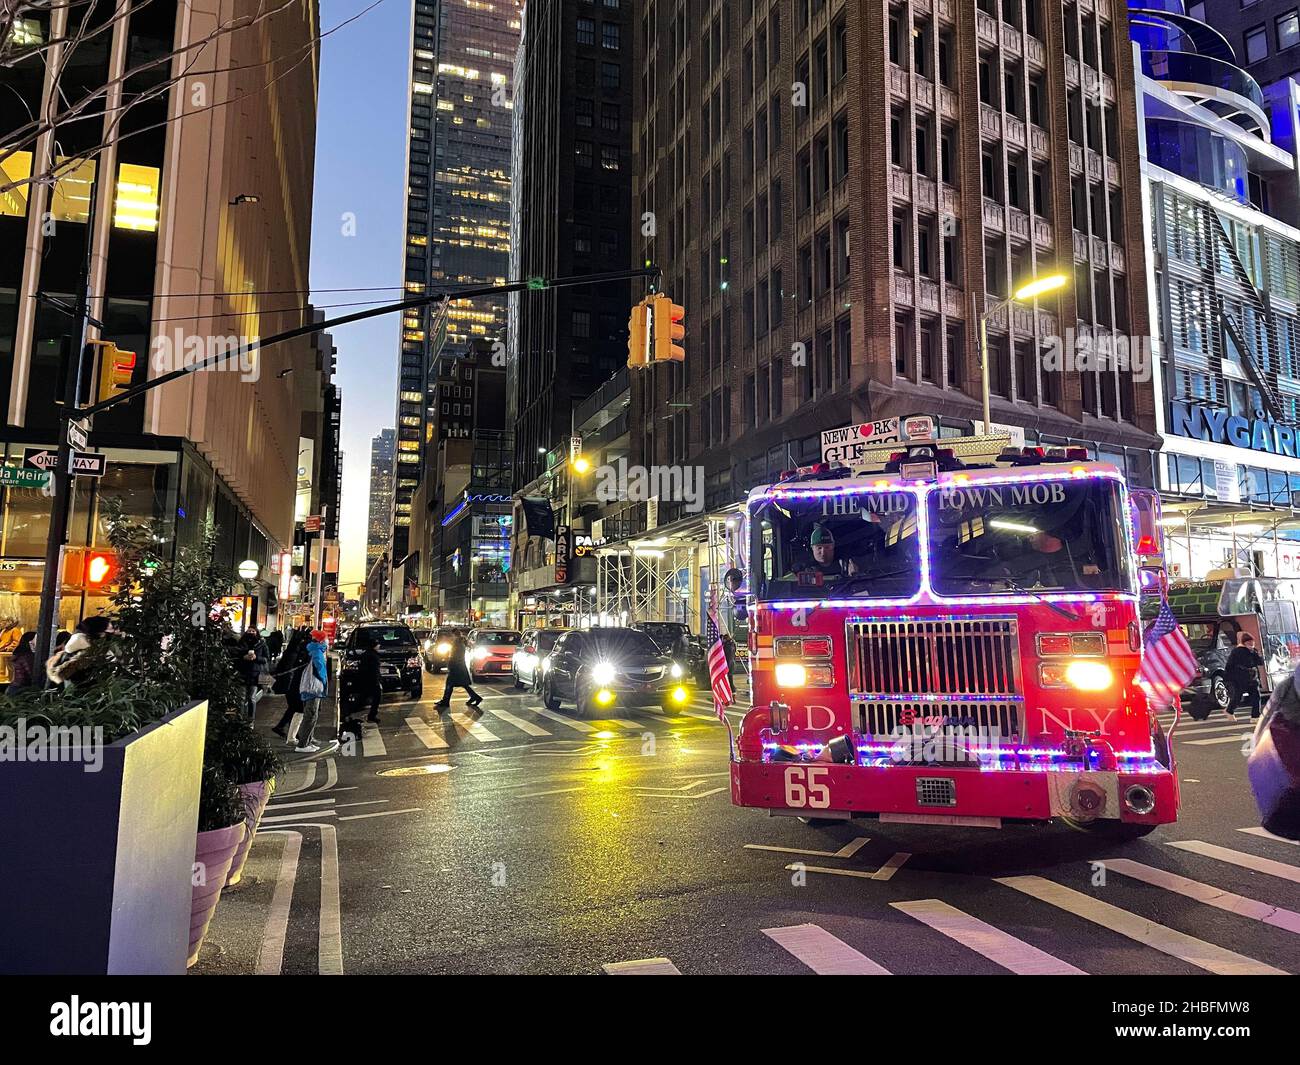 Un camion de feu FDNY décoré dans un éclairage de Noël et les mots « The Midtown Mob » sur le pare-brise tournent un coin à Manhattan, New York City Banque D'Images